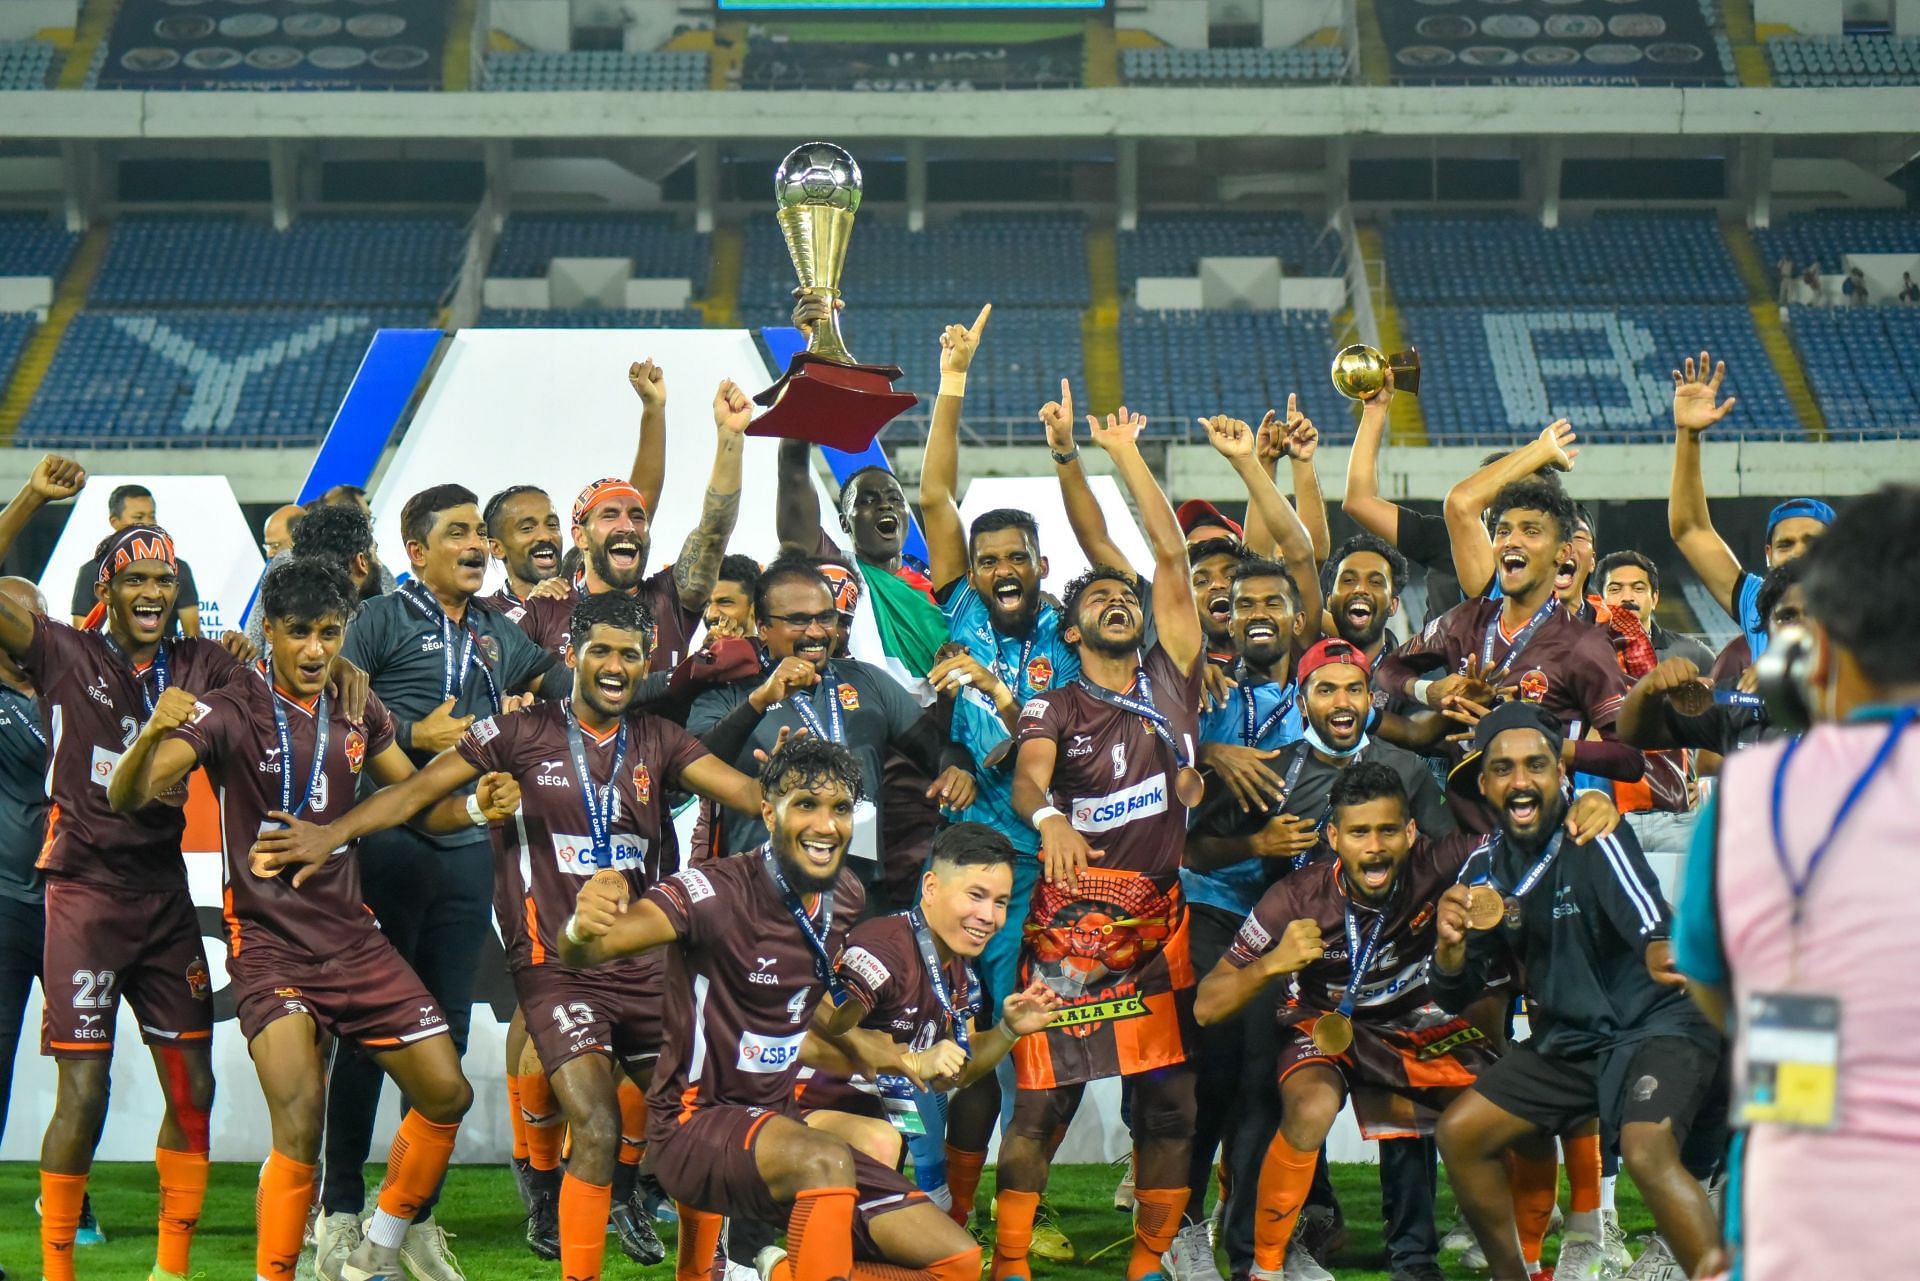 Gokulam Kerala FC players celebrating after winning the I-League 2021-22 trophy. (Image Courtesy: Twitter/GokulamKeralaFC)